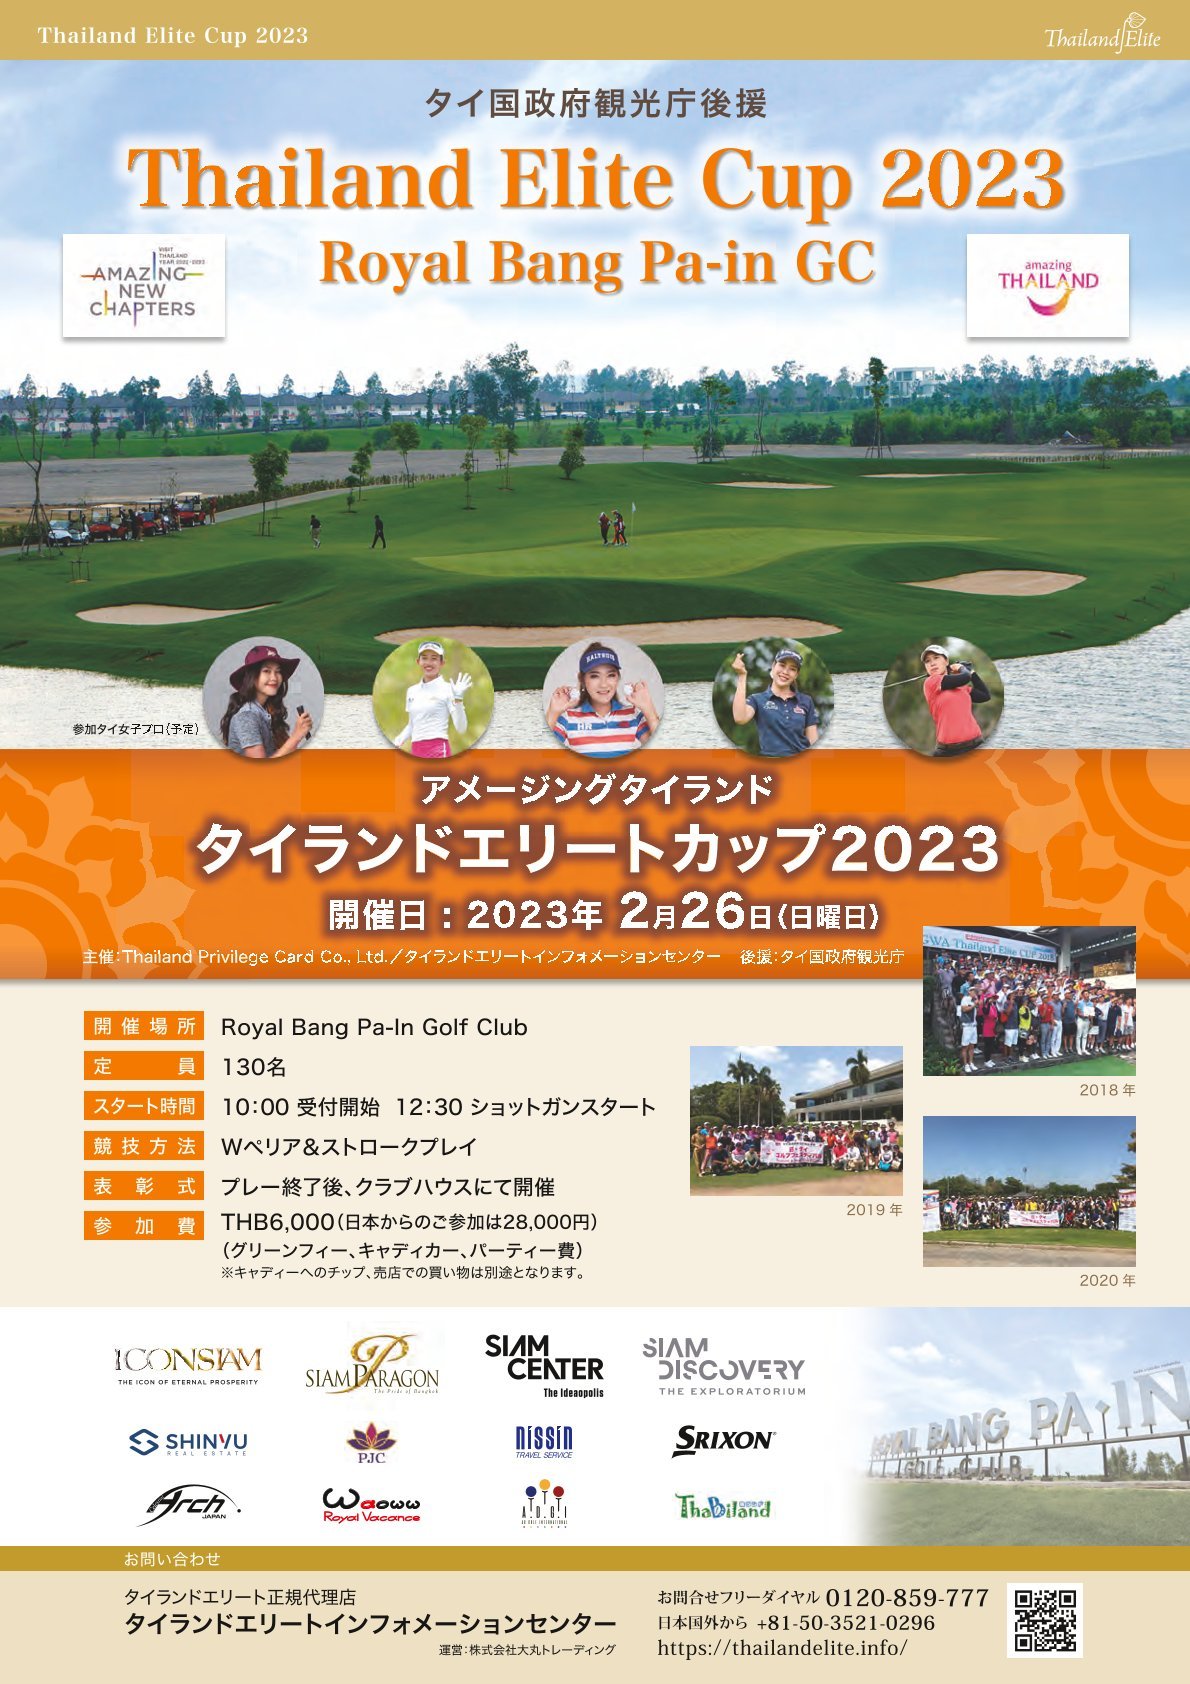 タイ居住プログラム“タイランドエリート”による
ゴルフコンペ「Thailand Privilege Cup 2023」、
5つ星ゴルフクラブにて2月26日(日)に開催！